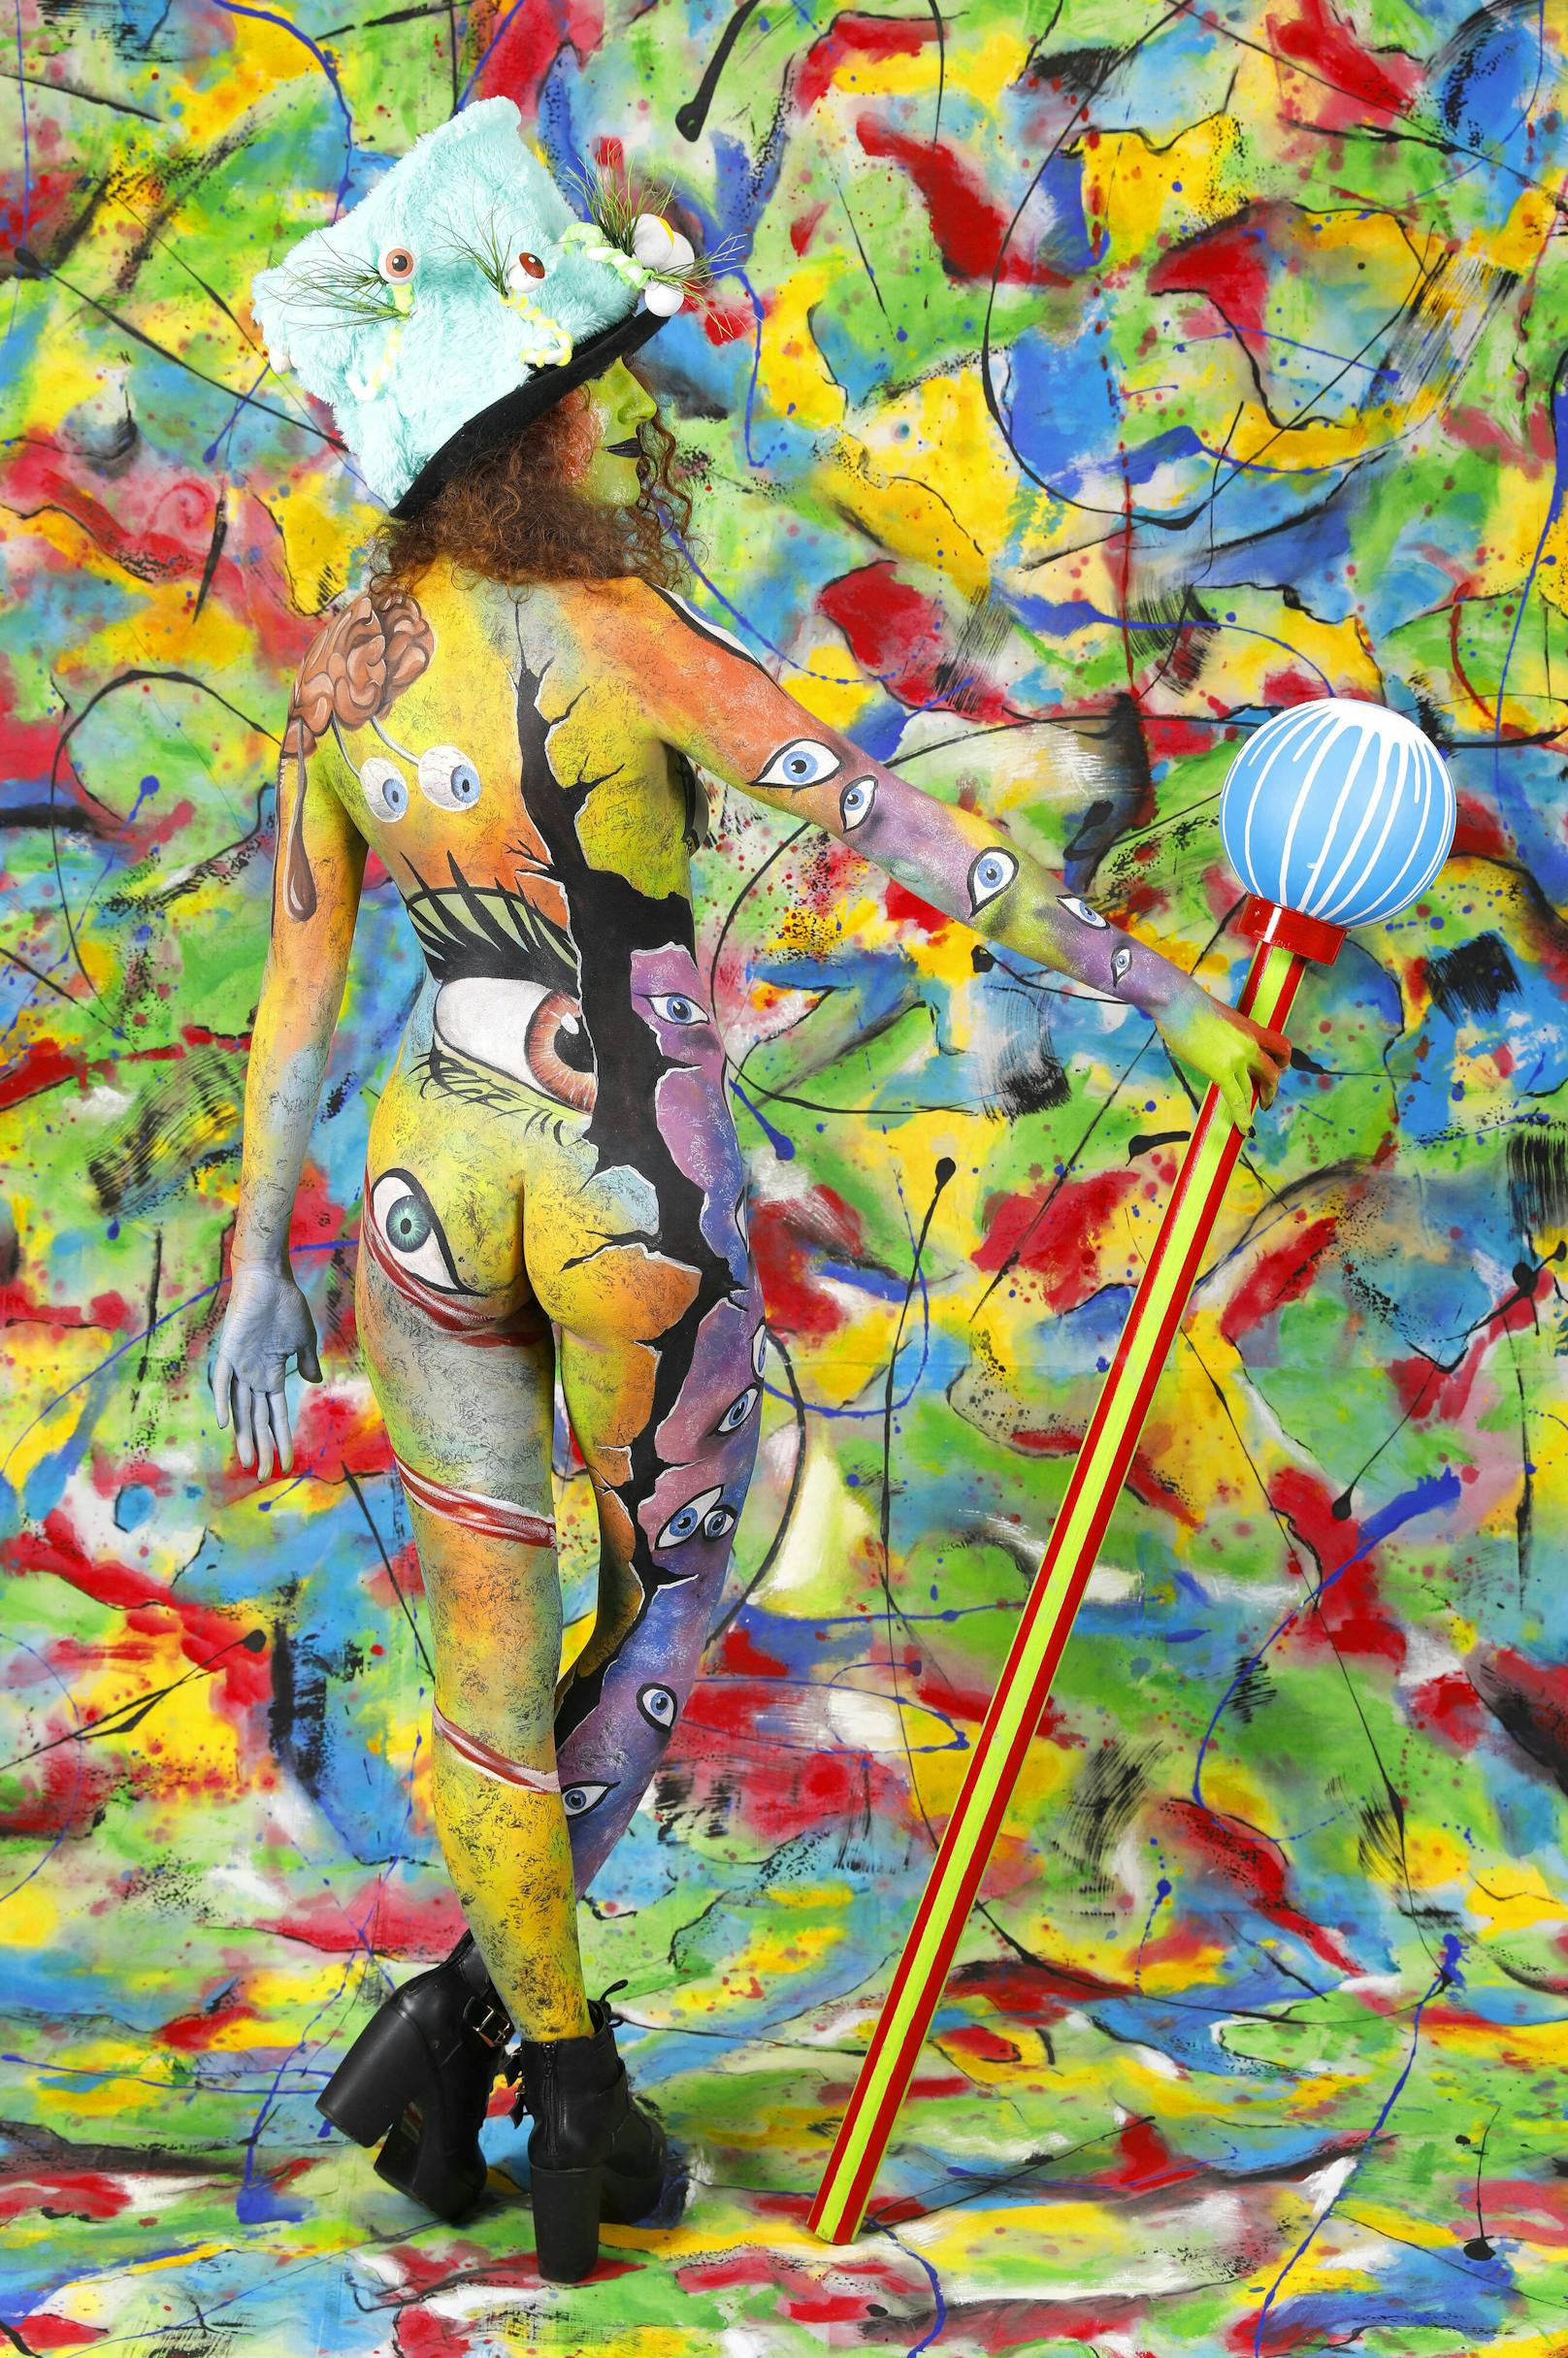 Der Künstler Jörg Düsterwald sorgte mit dieser Farbexplosion für Aufsehen.